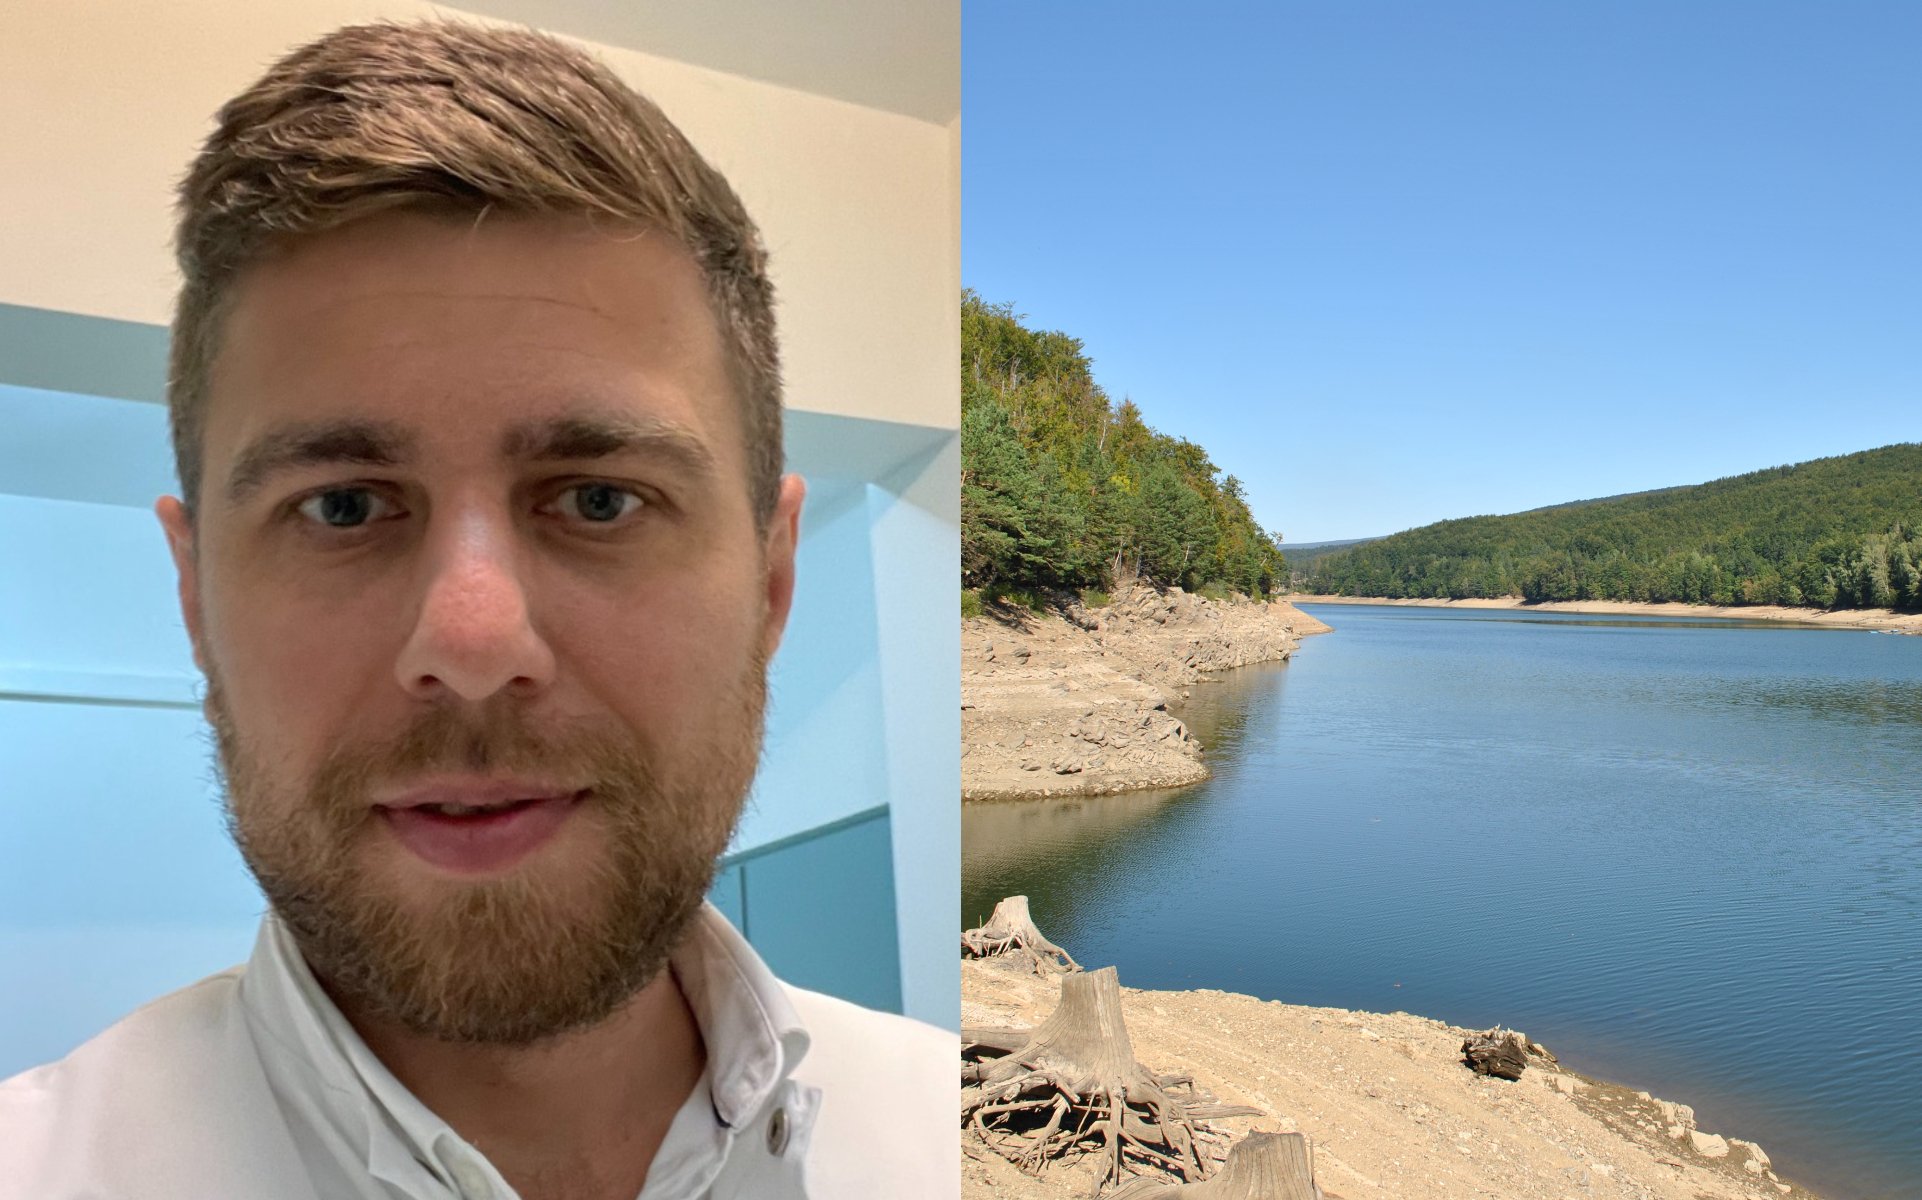  Un medic care s-a înecat în Lacul Gozna, găsit cu ajutorul unui aparat unic în România, bazat pe inteligenţa artificială